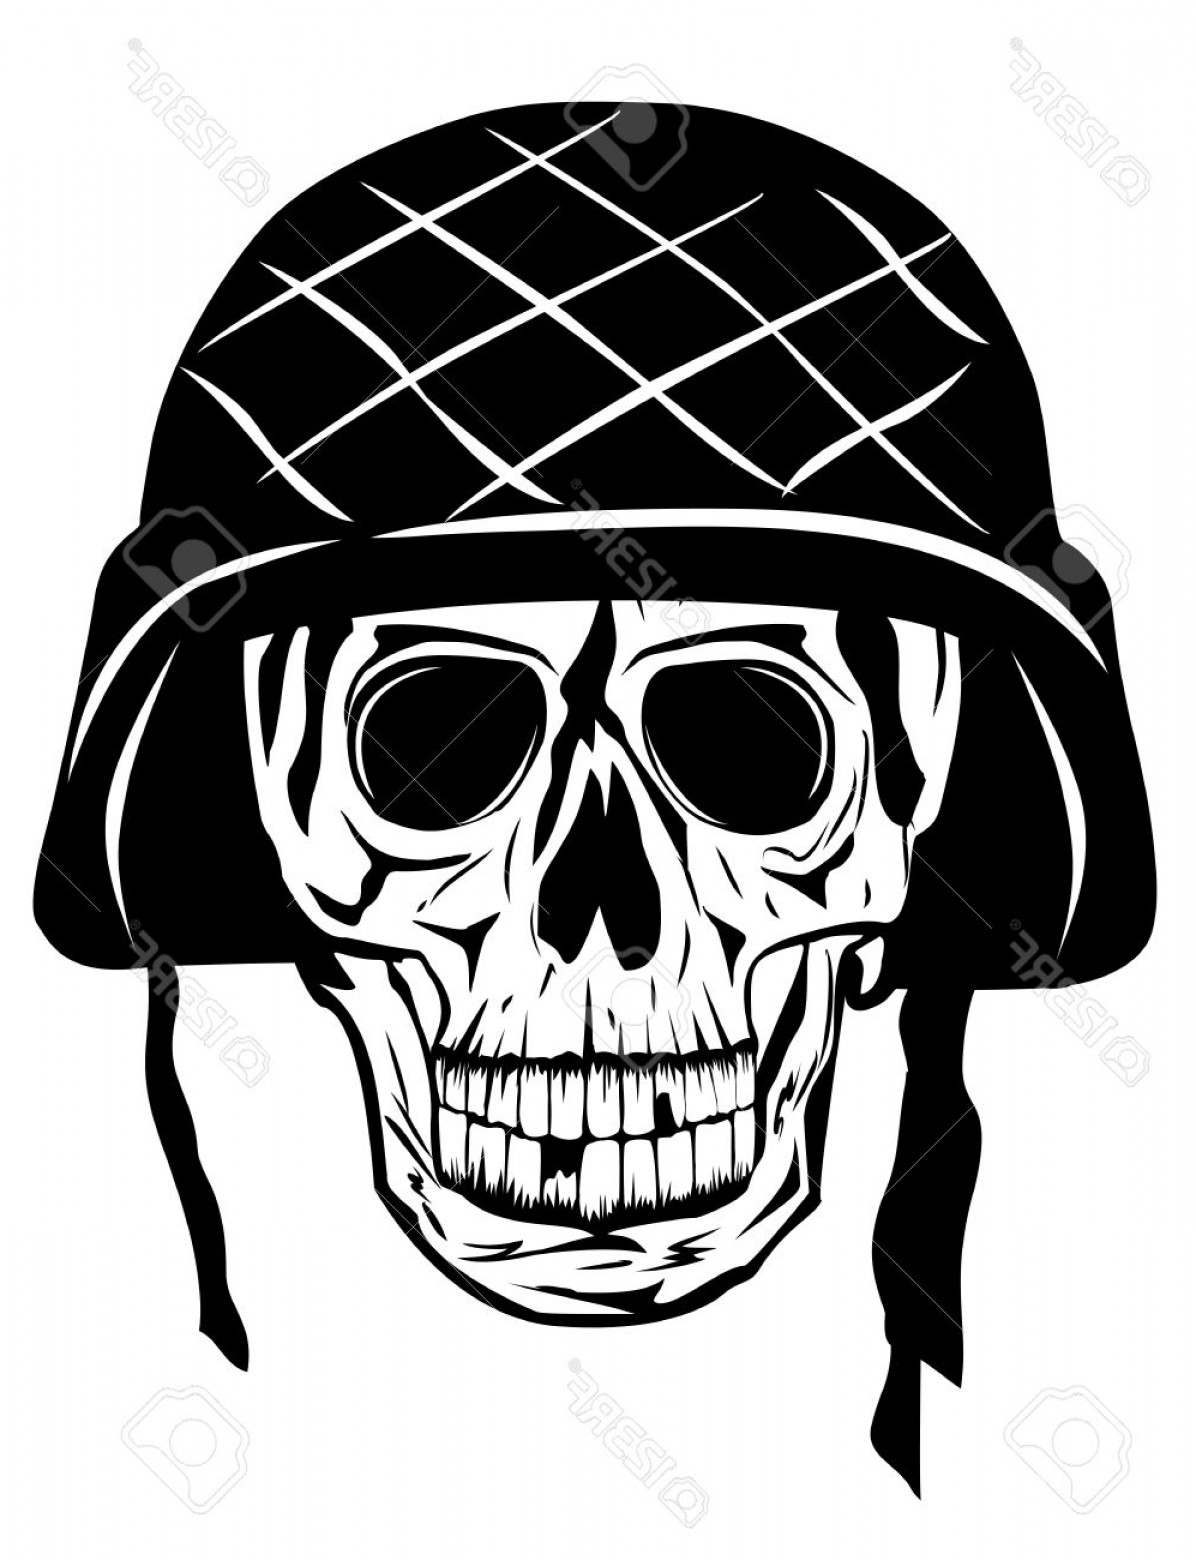 Photoimage Of Skull In An Army Helmet